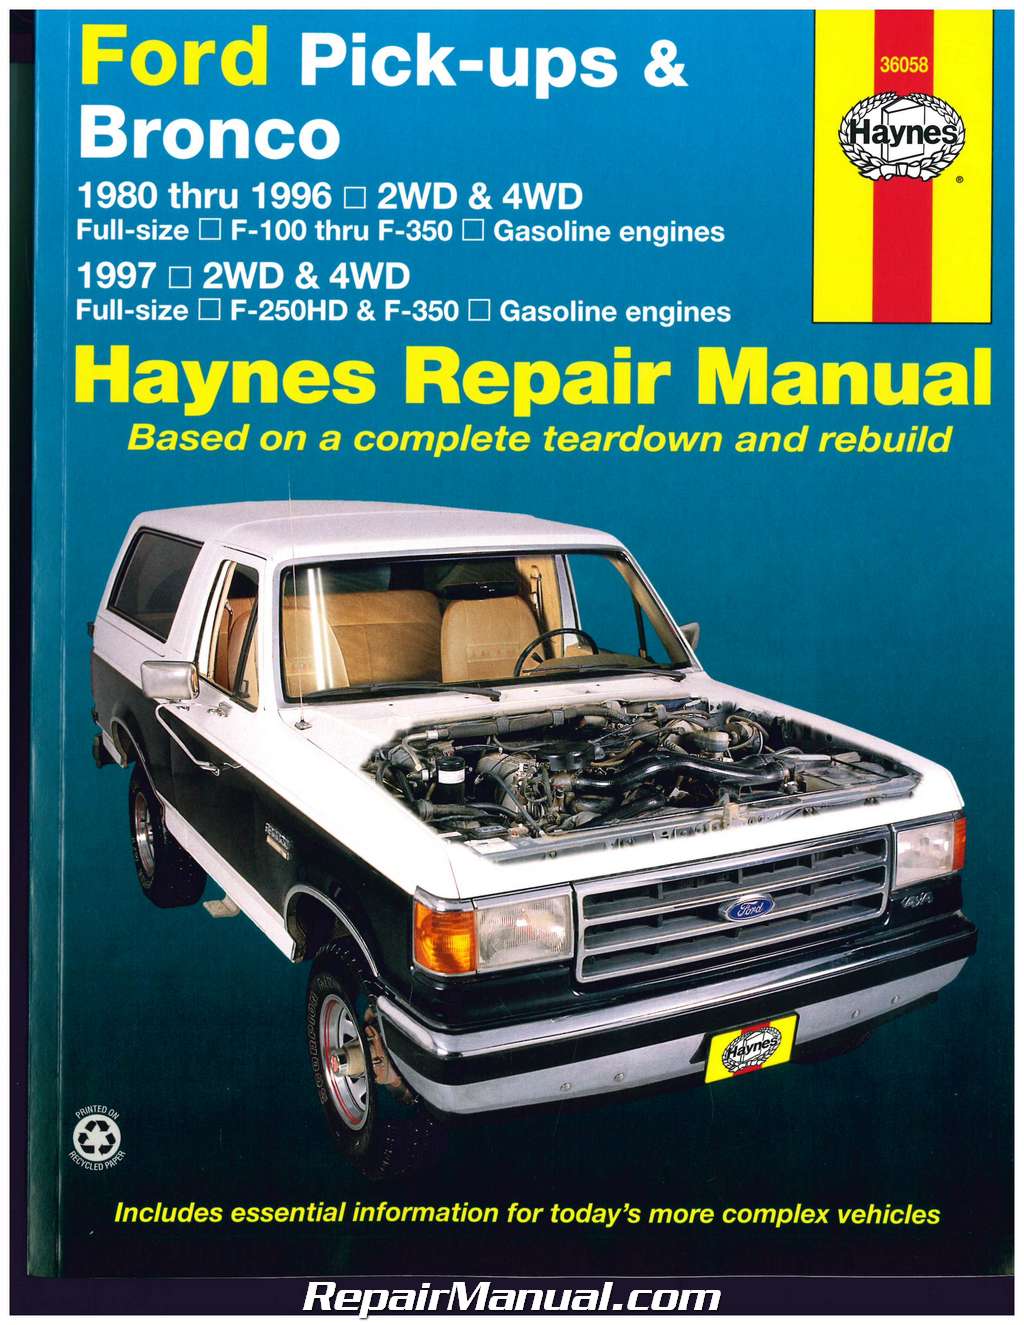 Ford pick-ups and bronco haynes repair manual pdf